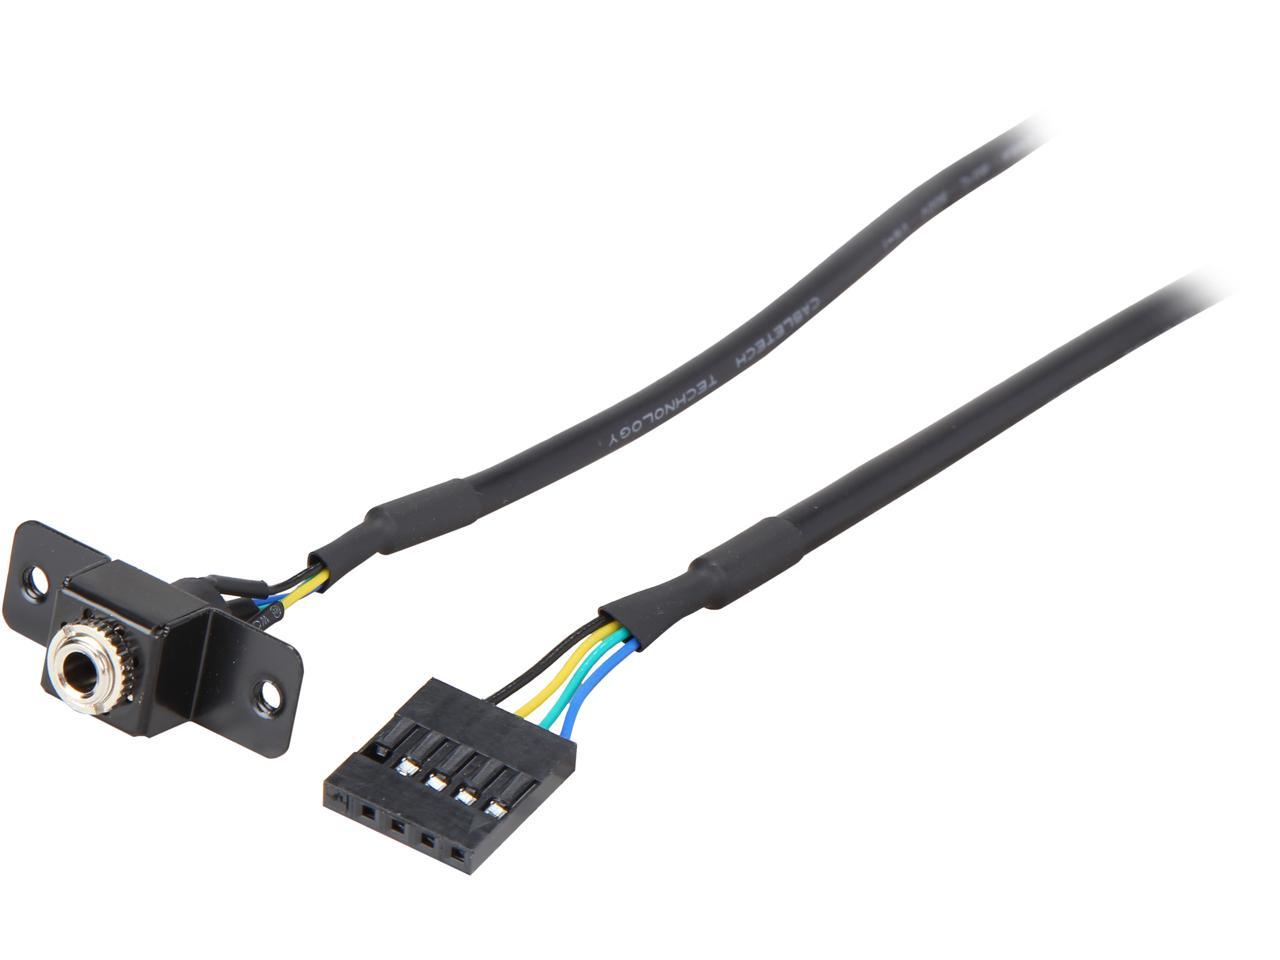 ASRock Deskmini A300 Barebone Accessory Model Rear Audio Cable